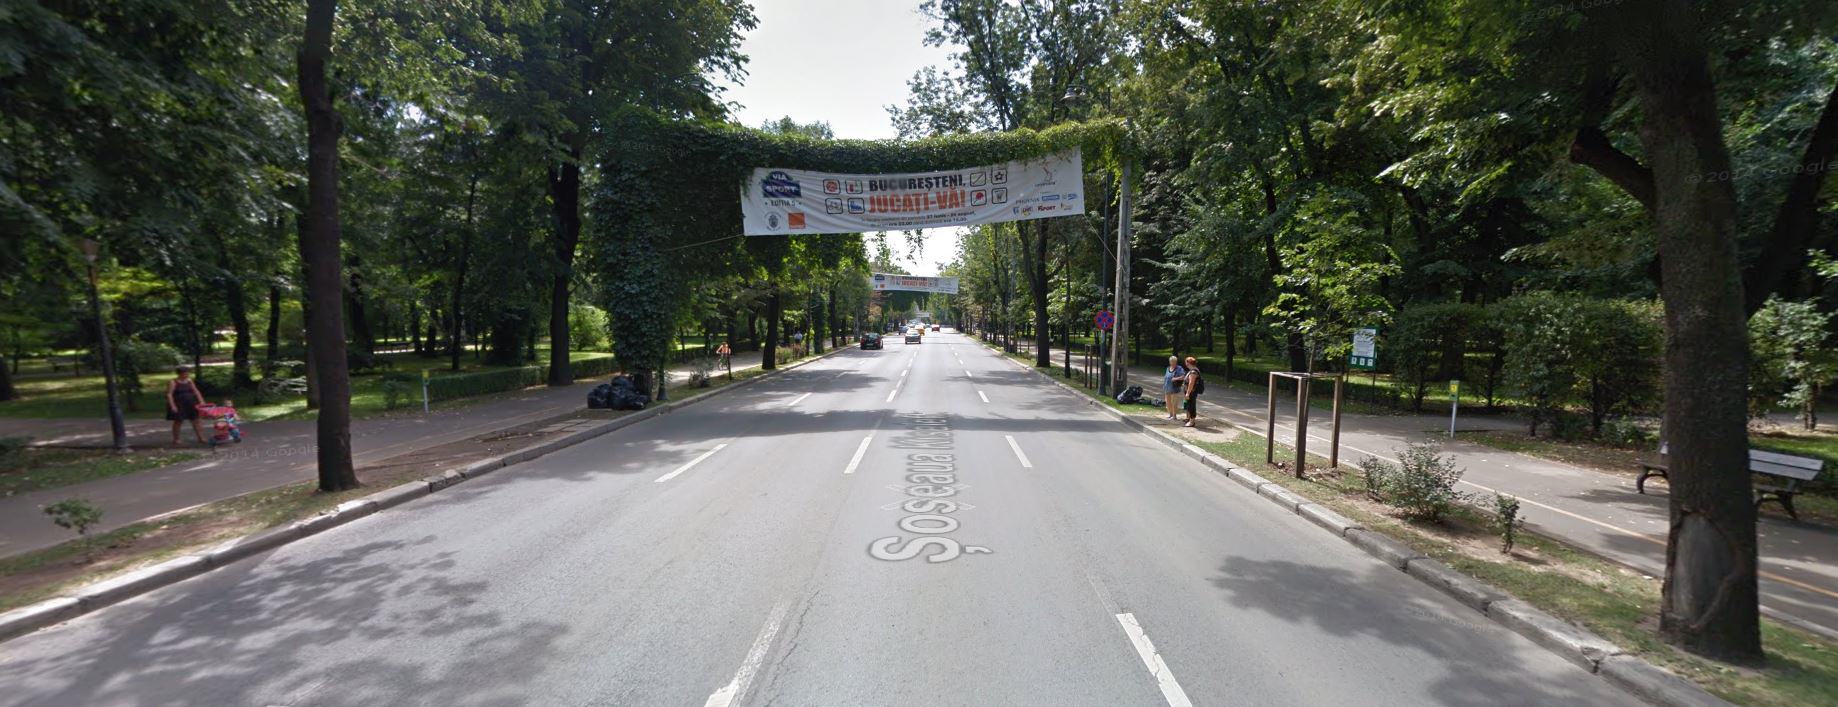 Ulica Kiseleff w Bukareszcie (2014) z widocznymi reklamami wydarzenia VIa Sport; fot. Google Street View